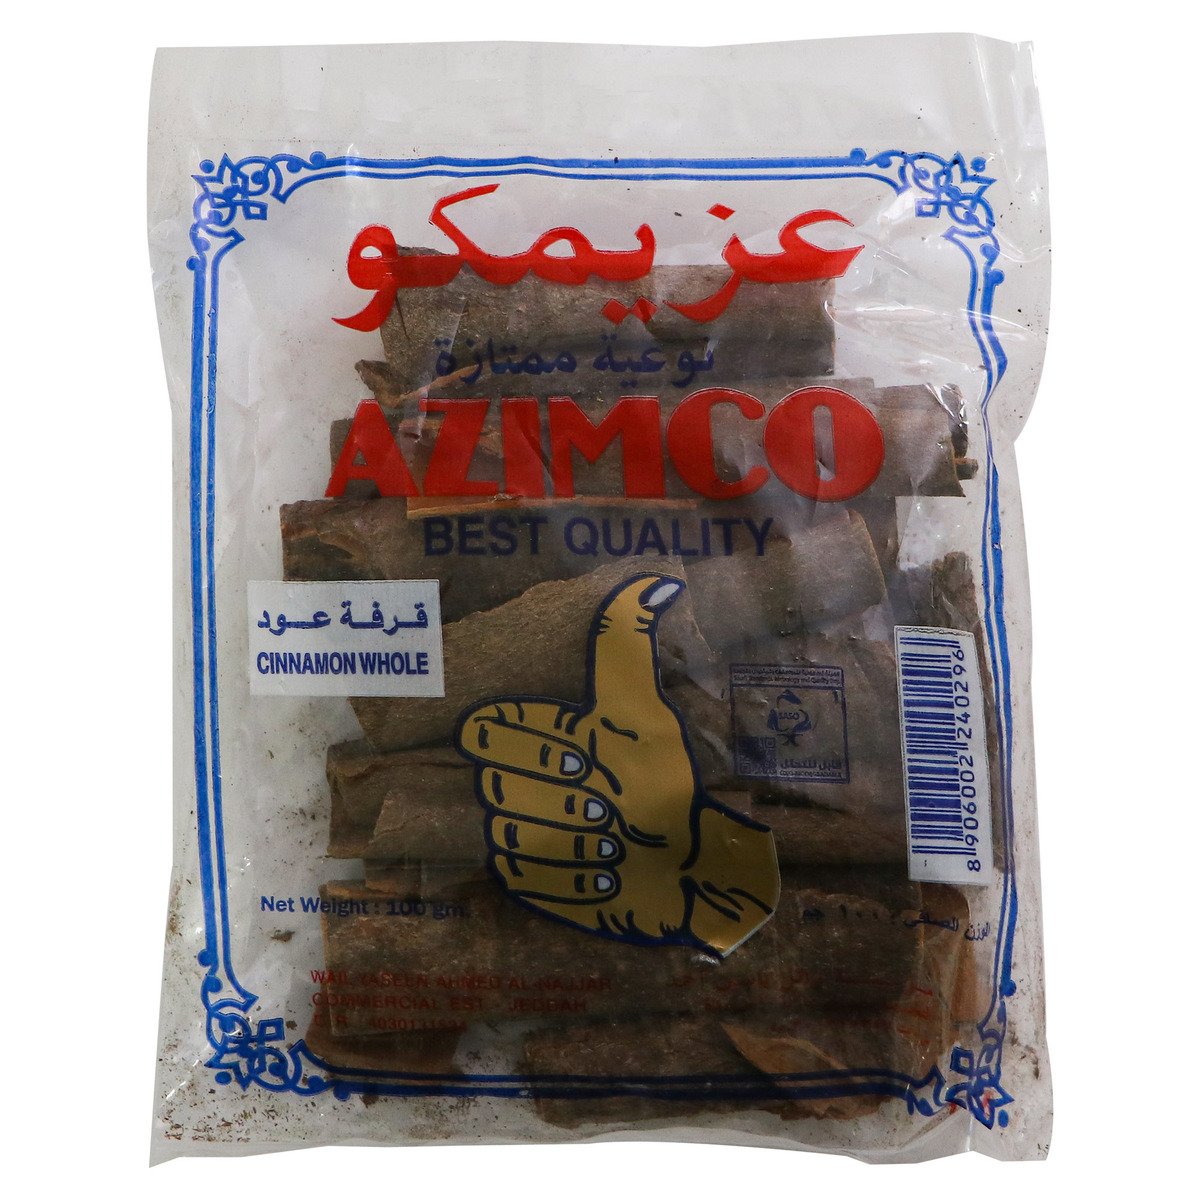 Azimco Cinnamon Whole 100g